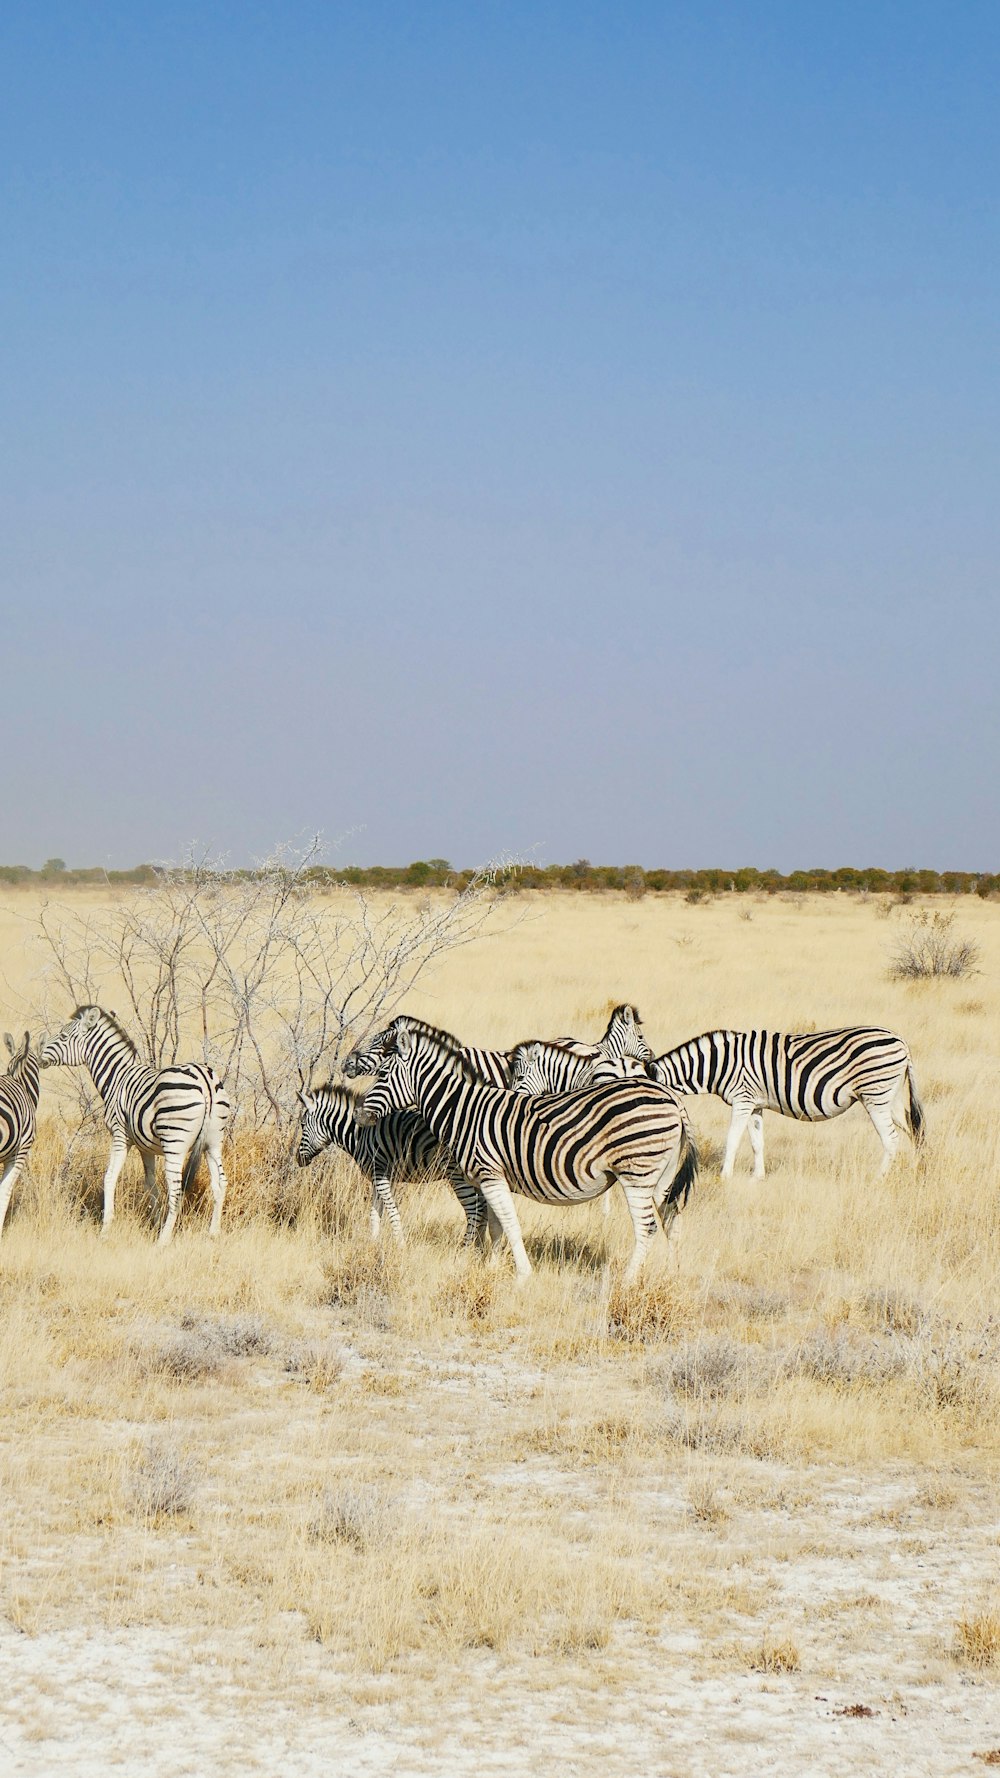 a herd of zebra walking across a dry grass field